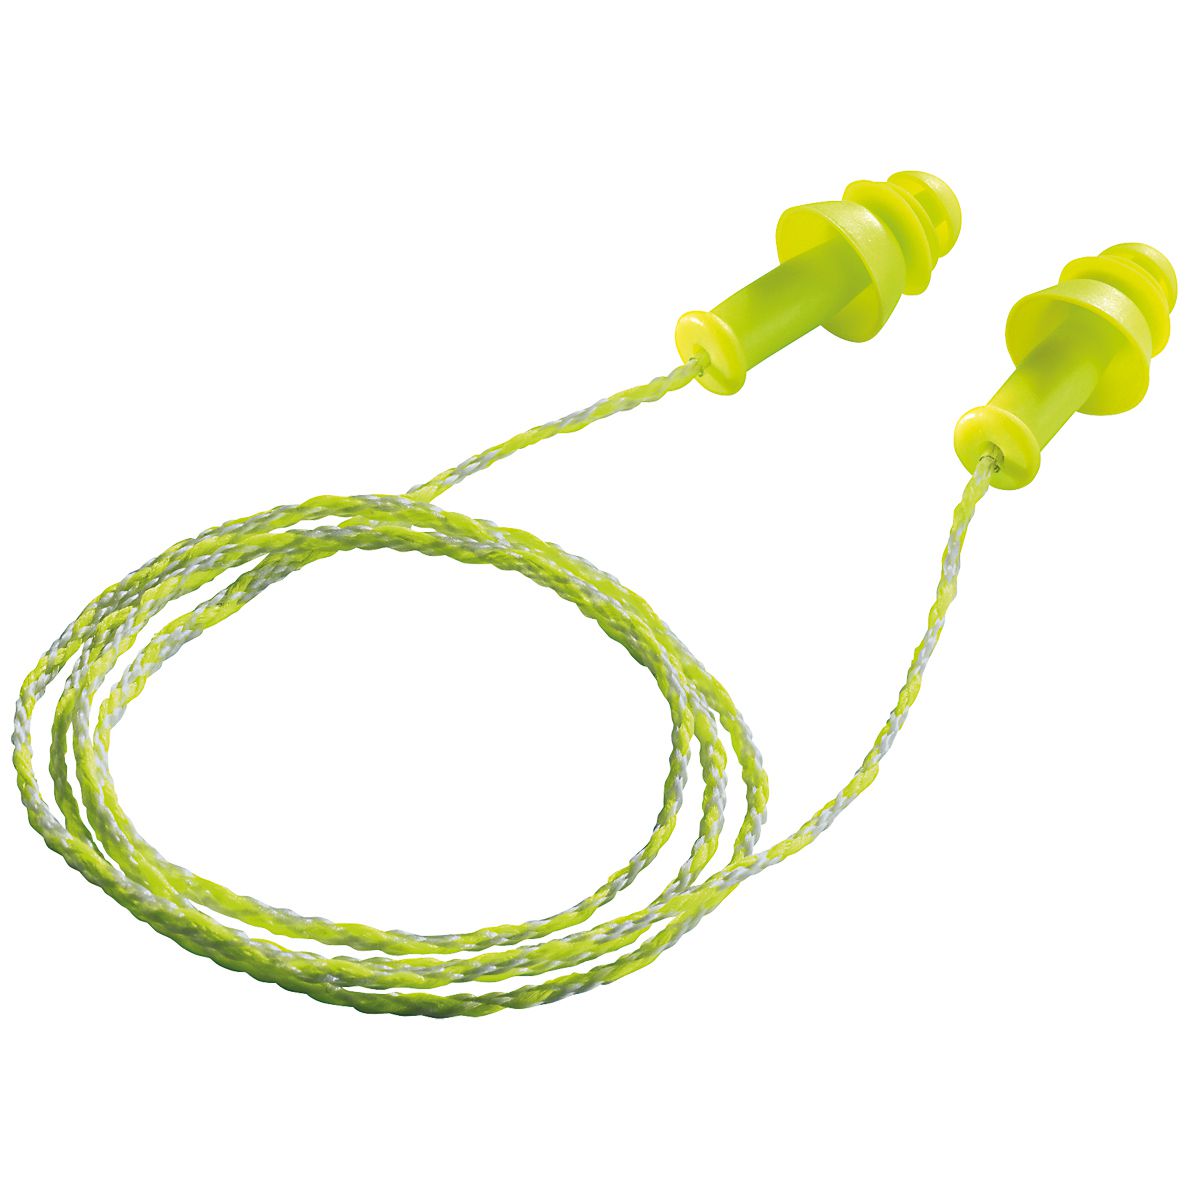 ABVERKAUF: uvex whisper+ Gehörschutzstöpsel - Mehrweg-Ohrenstöpsel mit Kordel - 27 dB